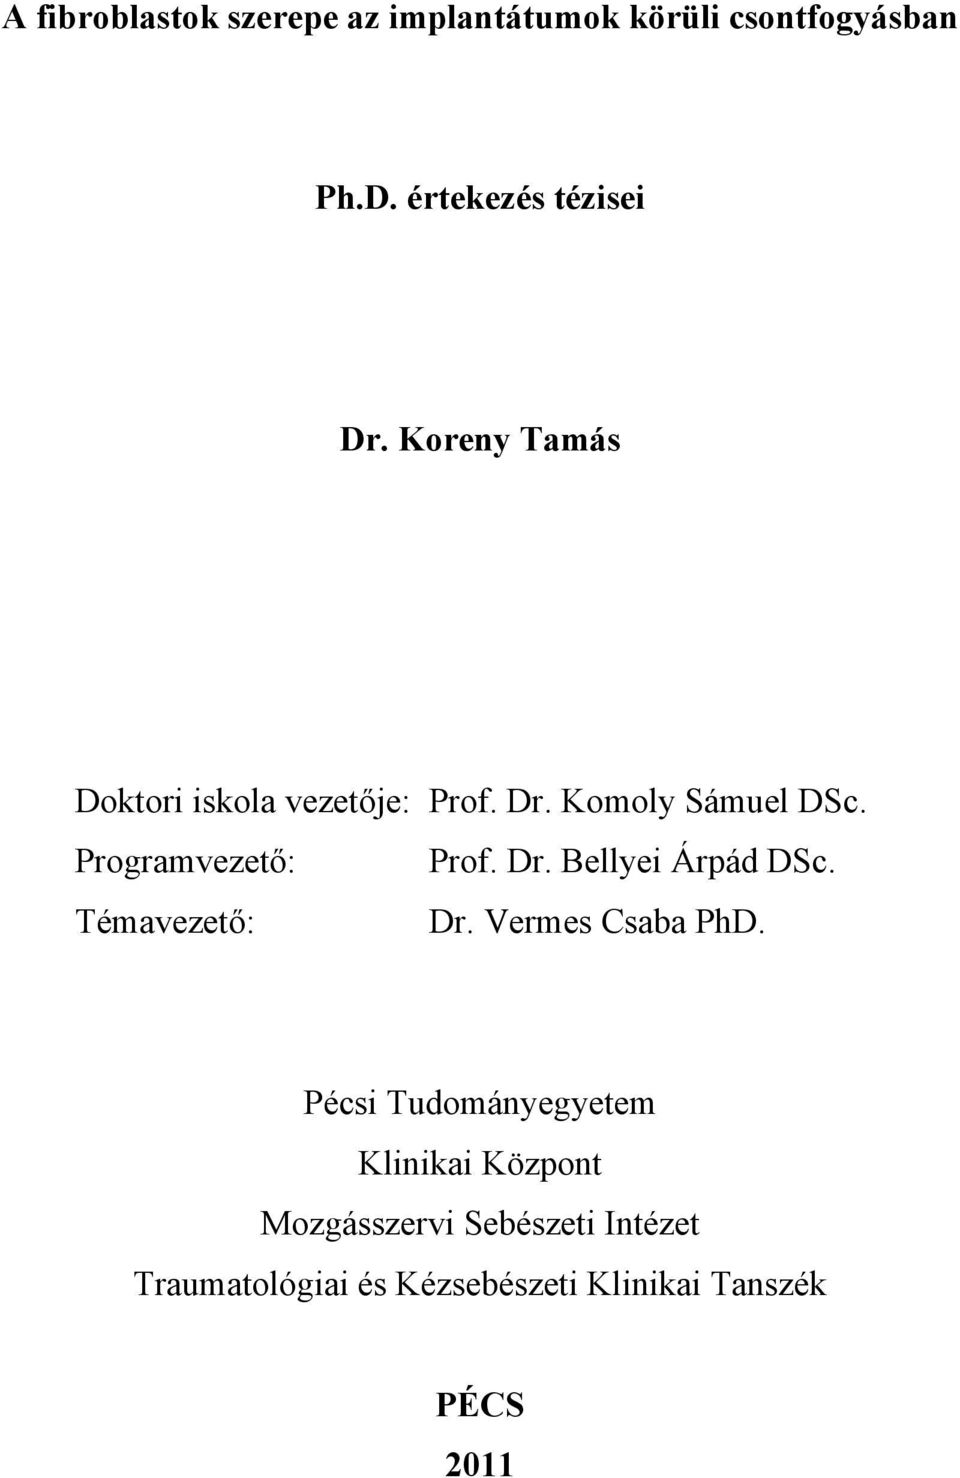 Témavezető: Dr. Vermes Csaba PhD.